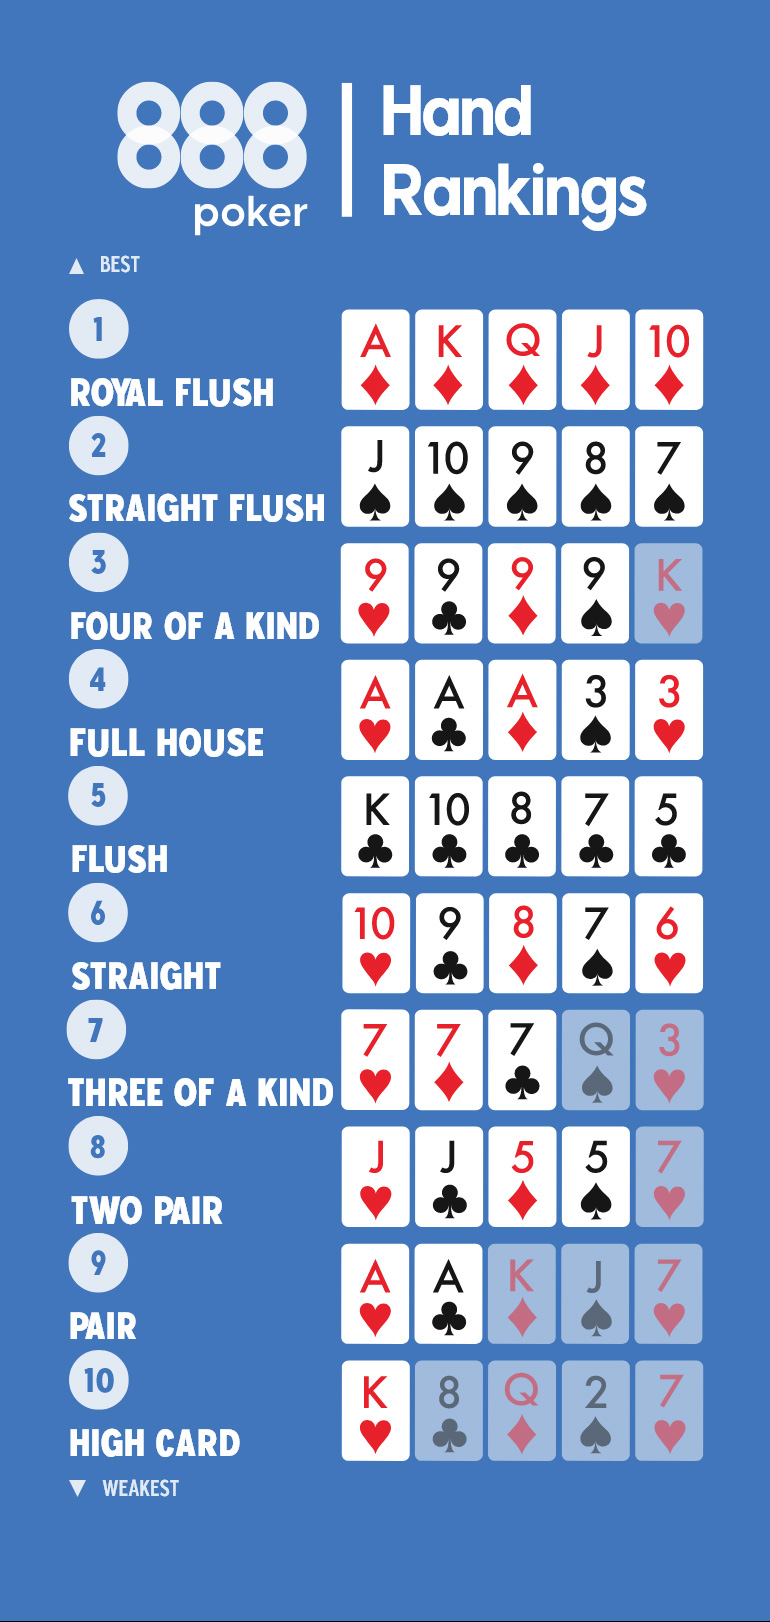 Kejser Shetland Tænke Poker Hands Ranked – What Beats What? | 888poker